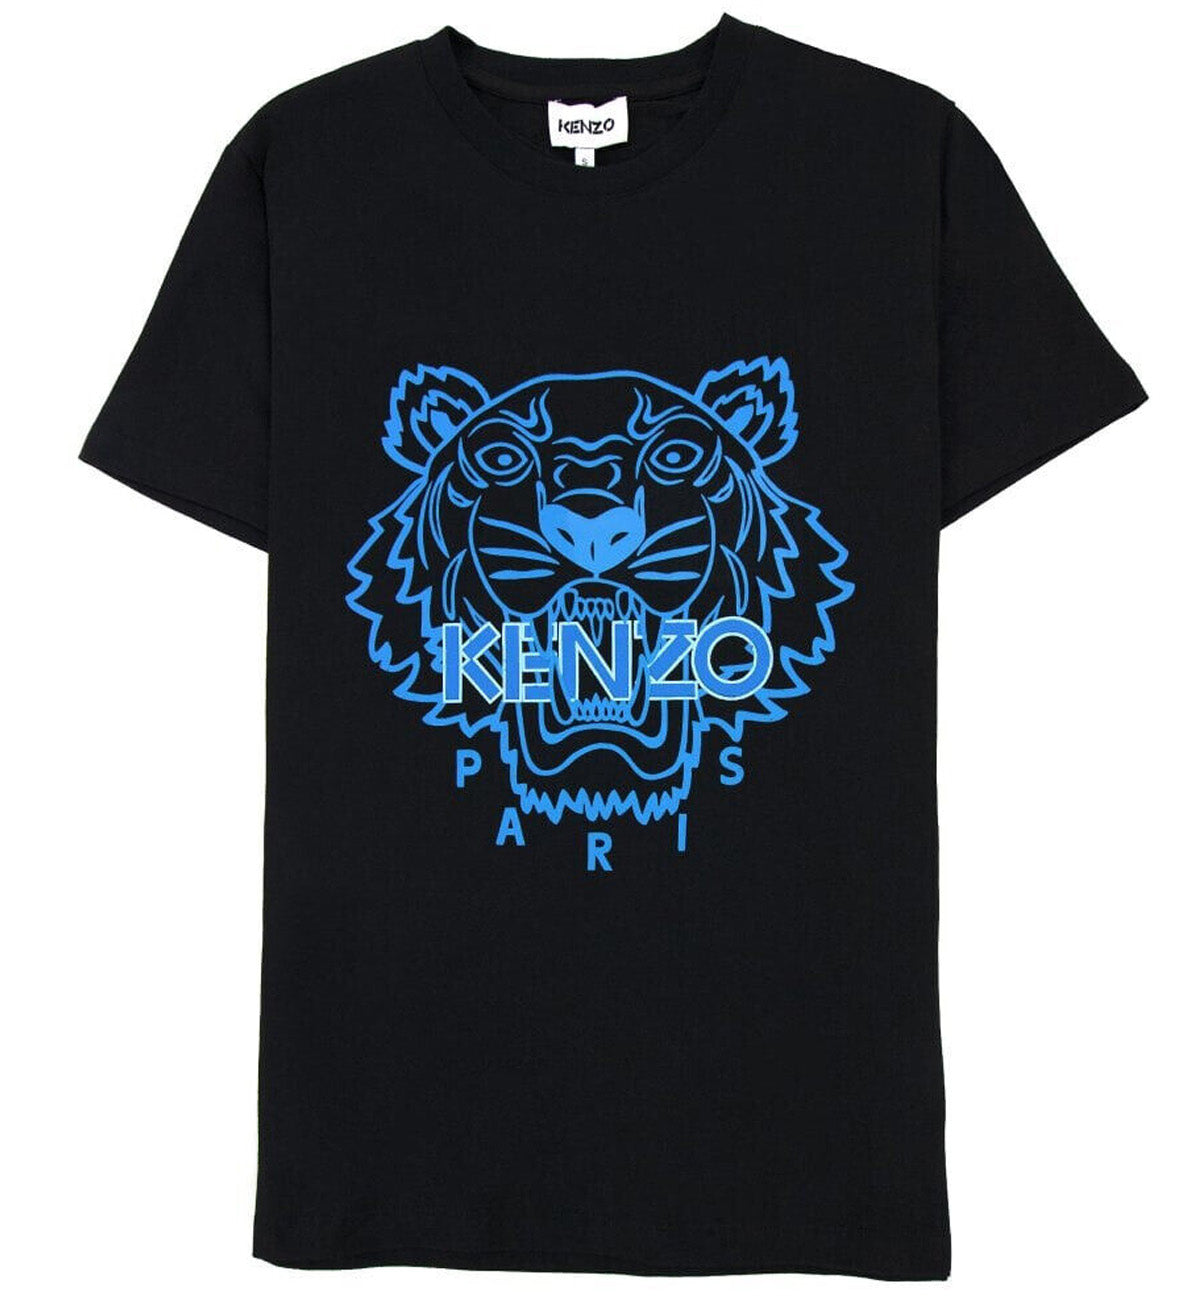 Kenzo Blue Line Tiger Printed T-Shirt (Black)